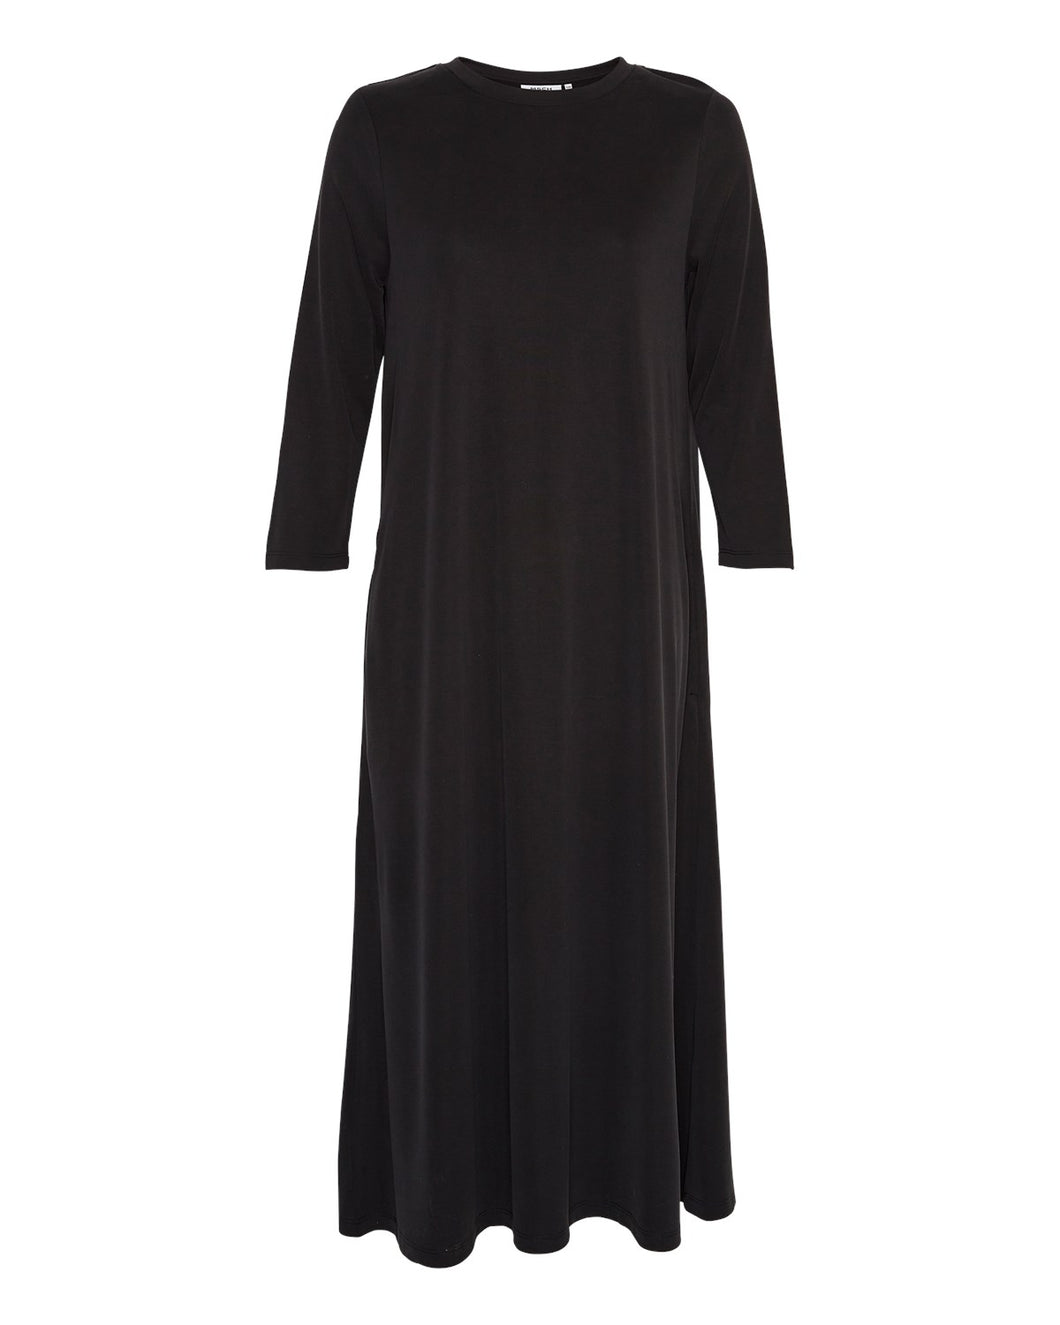 MSCHBirdia Lynette 3/4 Dress, black